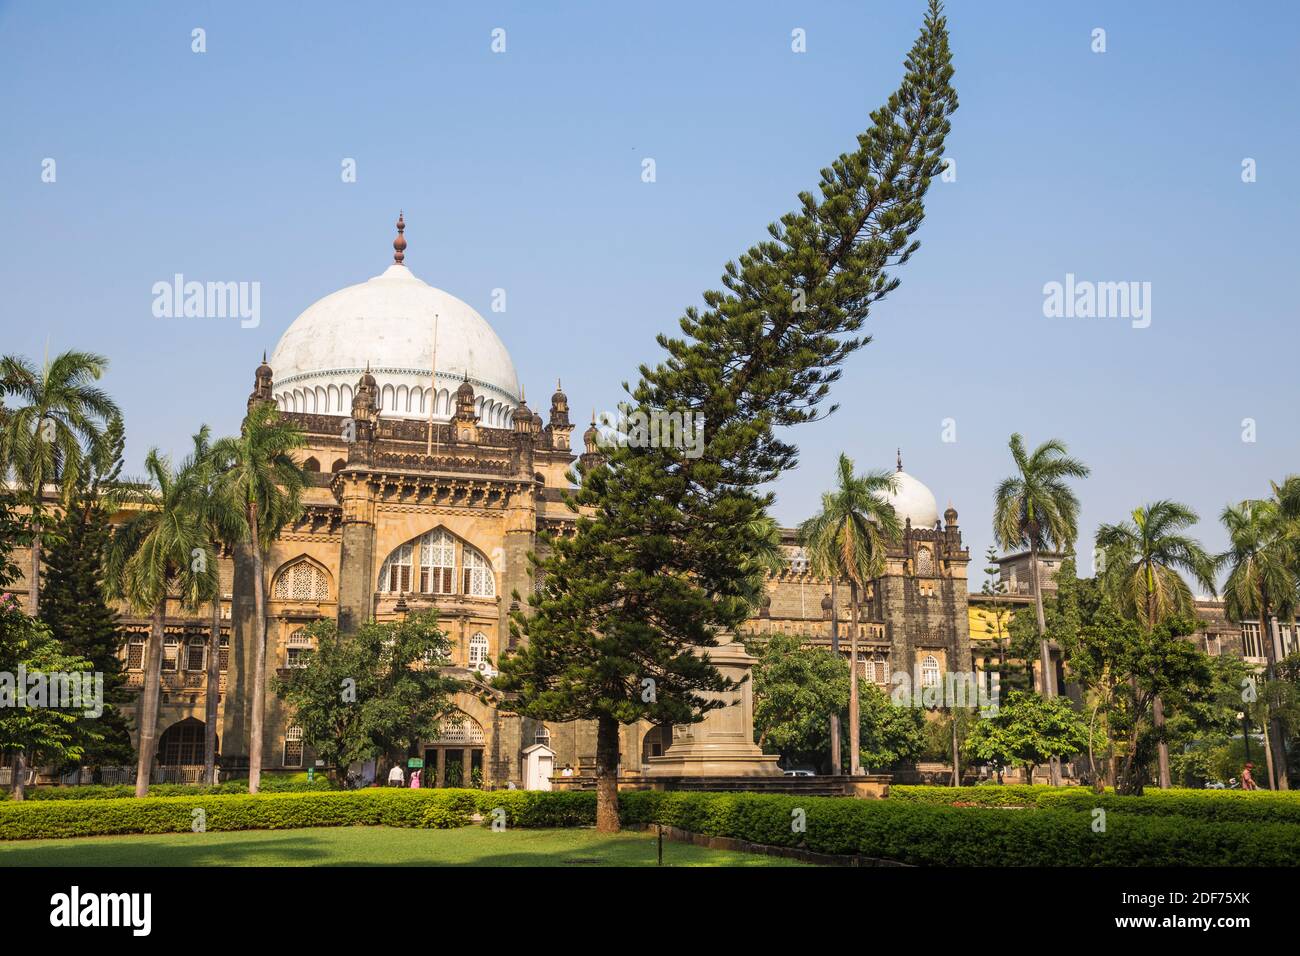 India, Maharashtra, Mumbai, Fort Area, Chhatrapati Shivaji Maharaj Vastu Sangrahalaya - Art and History Museum Stock Photo